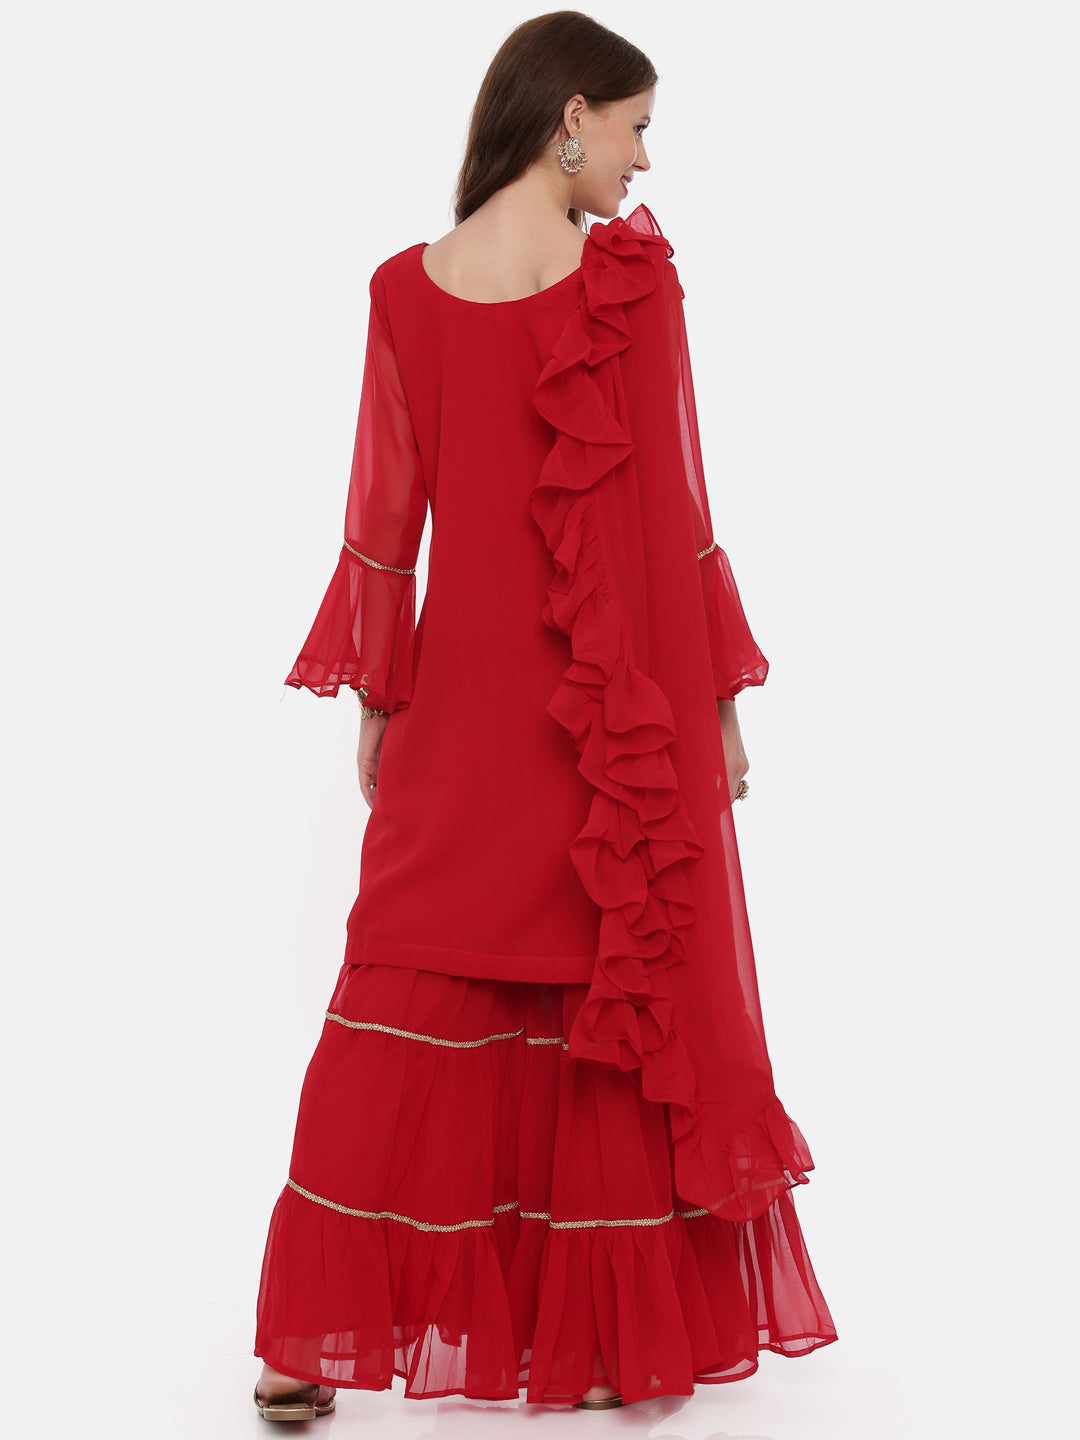 Neeru'S Maroon Color, Georgette Fabric Full Sleeves Suit-Gharara